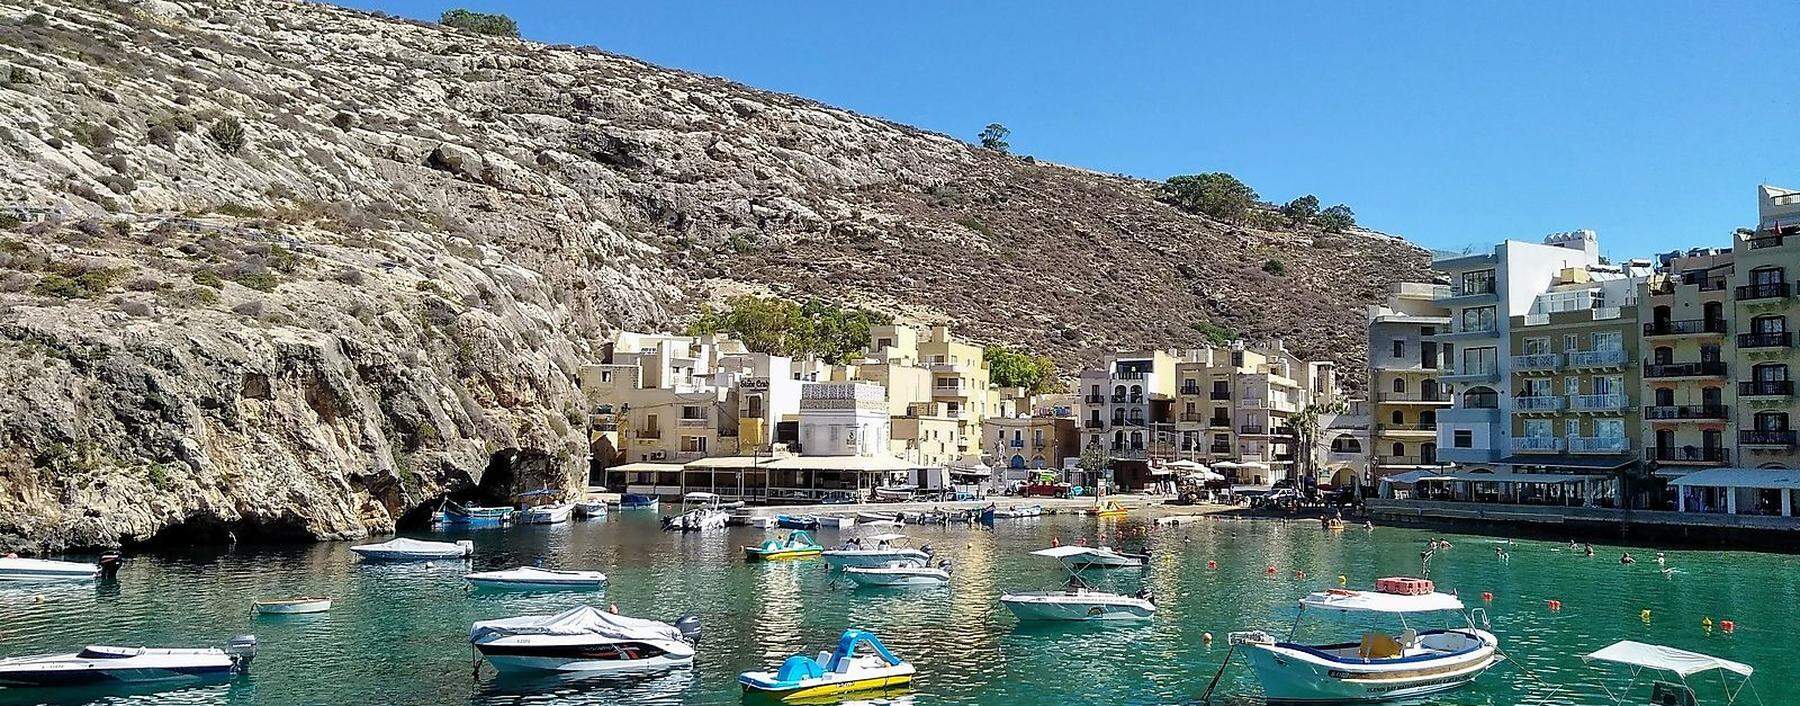 Das schmale, fjordartige Hafenbecken von Xlendi auf Gozo.